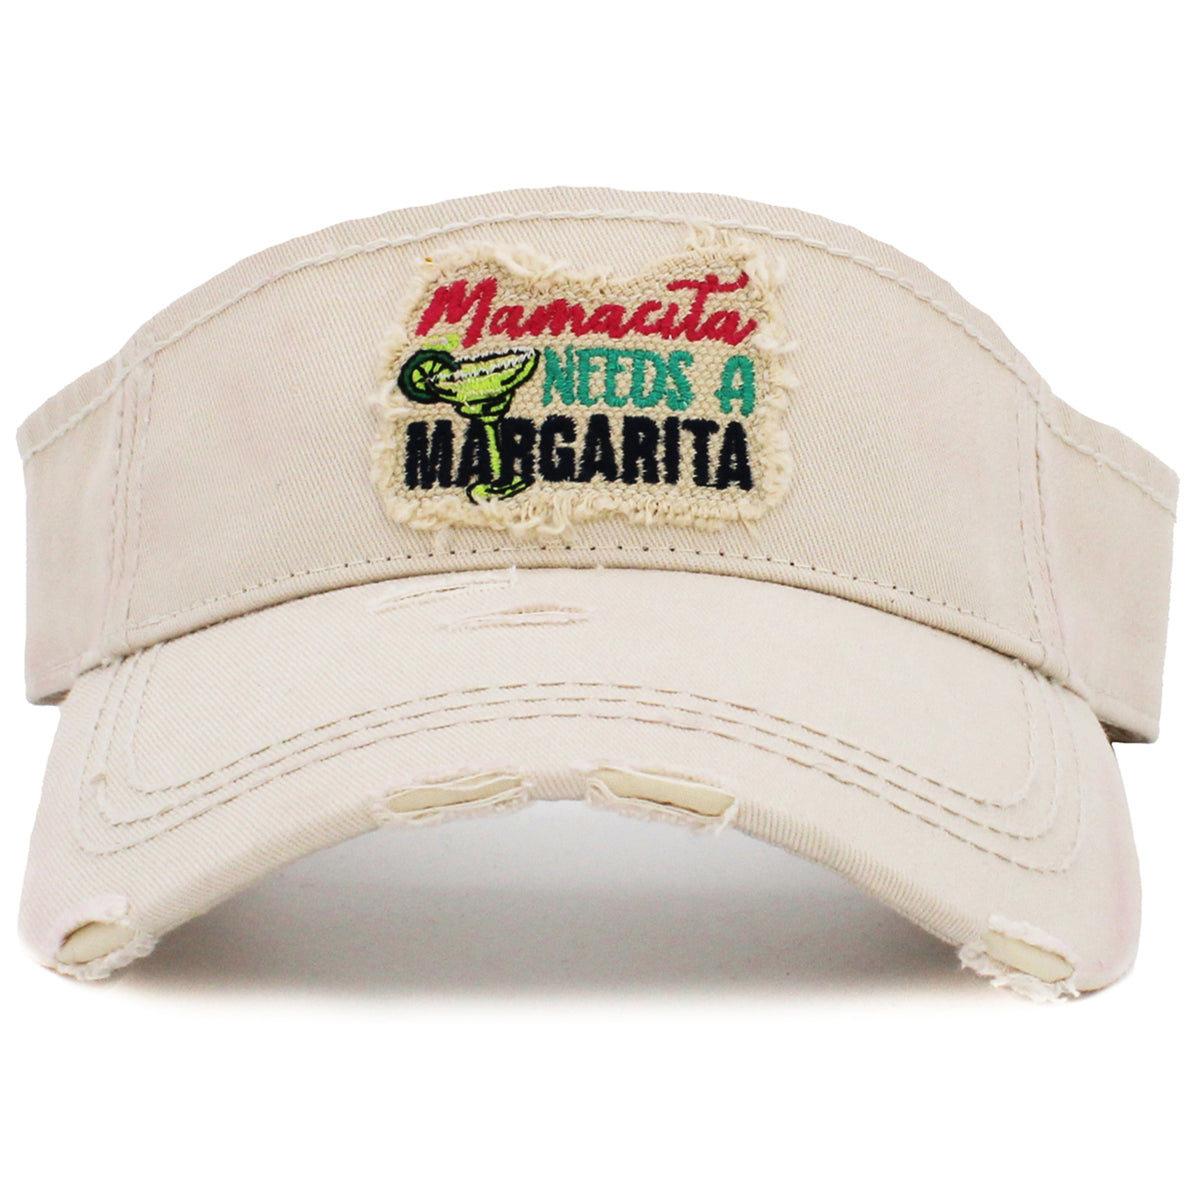 159 - Mamacita Needs a Margarita Visor - Stone